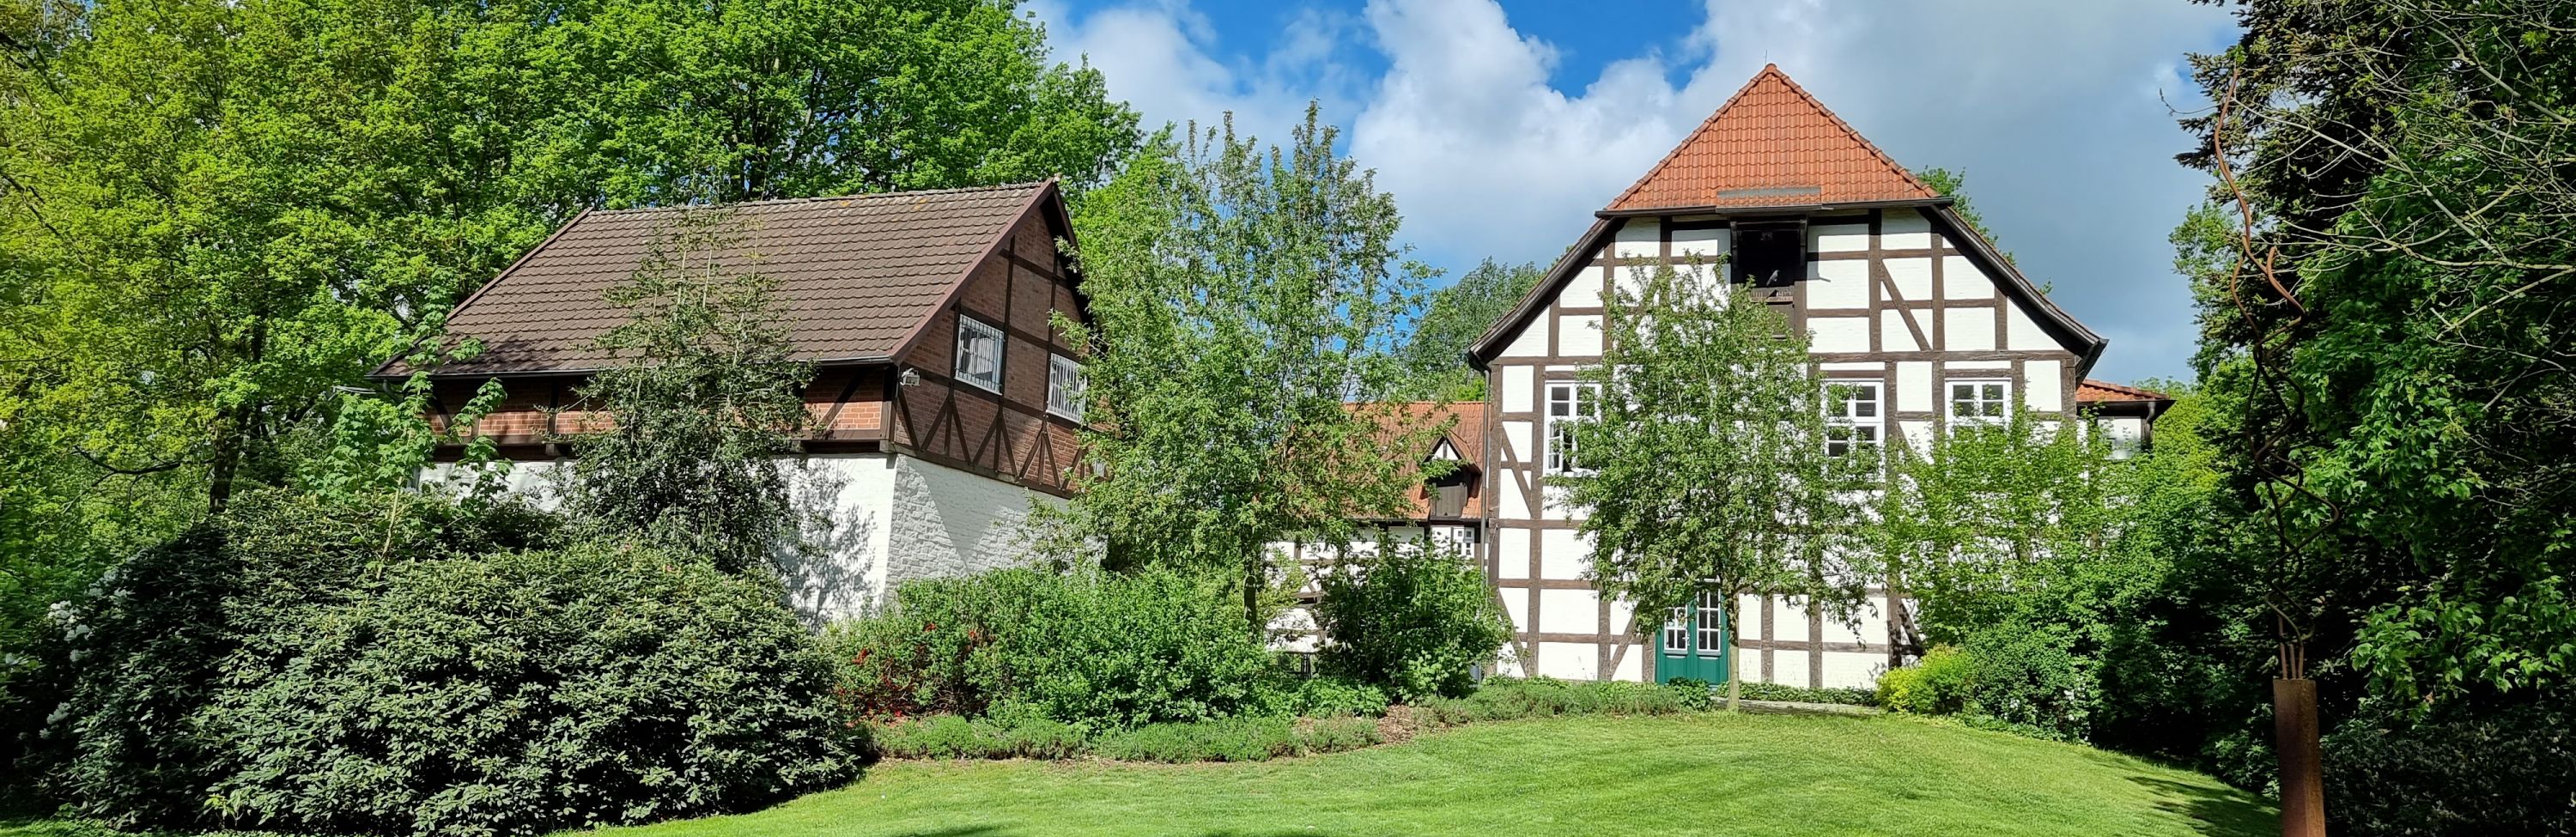 Die Freudenburg: Fachwerkhäuser inmitten einer grünen Wiese mit Bäumen